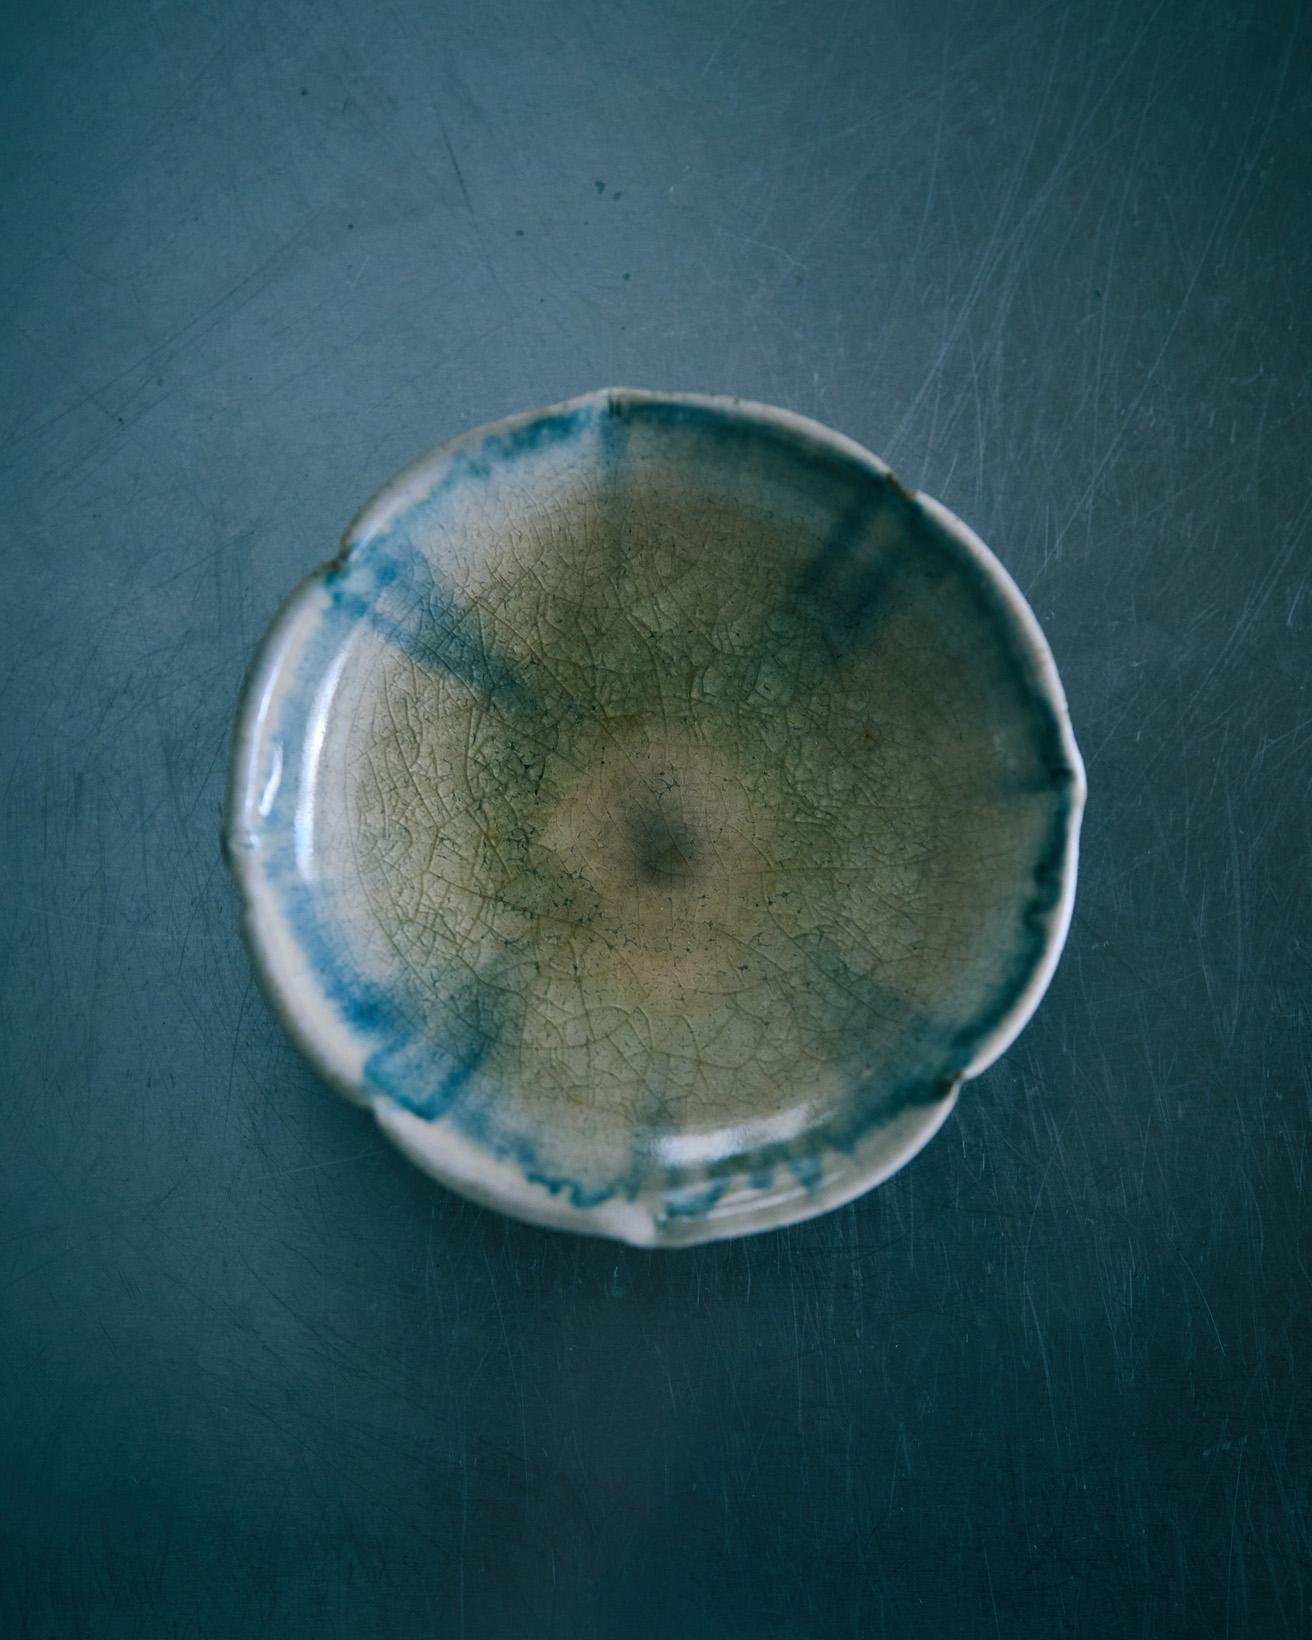 兵庫県で作陶する光藤佐さんのお皿です。粉引、刷毛目、鉄釉、白磁などいろんな作風を持つ作家さんですが、こちらは柔らかな美しい色合いに惹かれました。